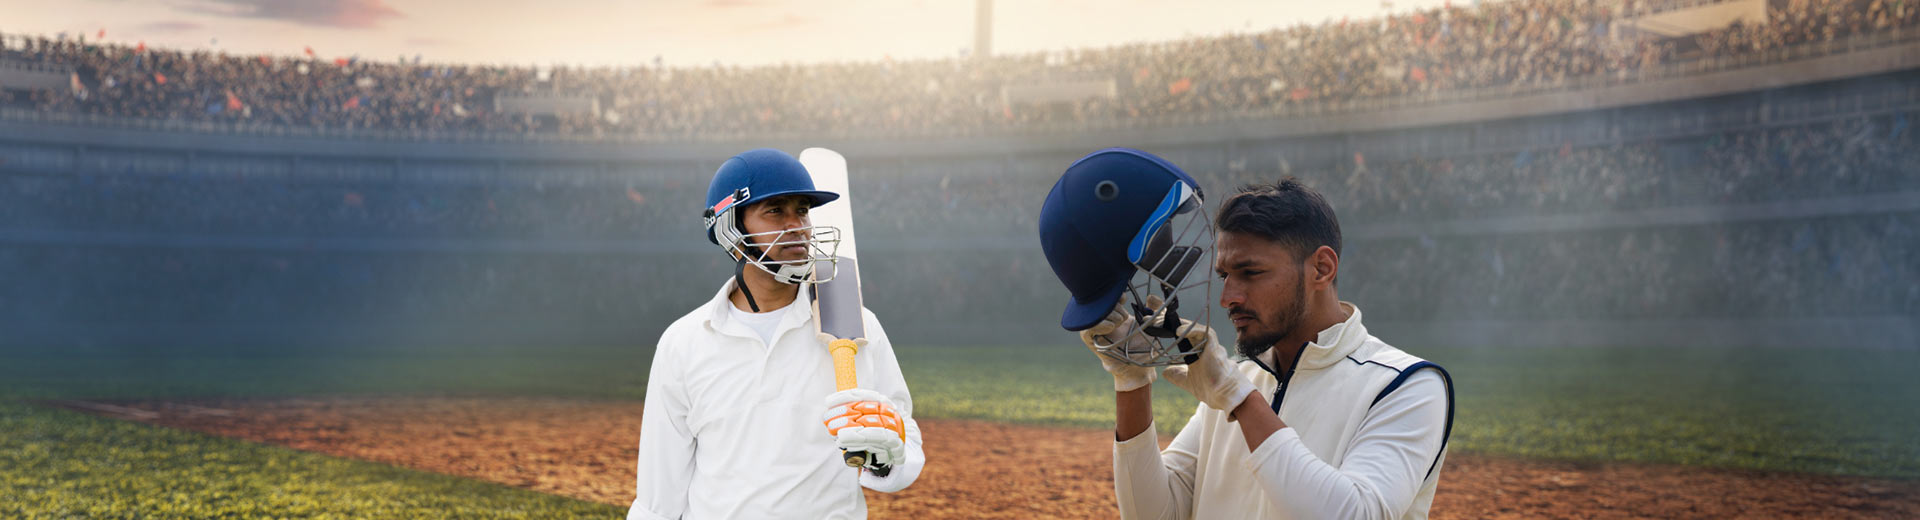 Cricket Helmet Manufacturers in Ufa